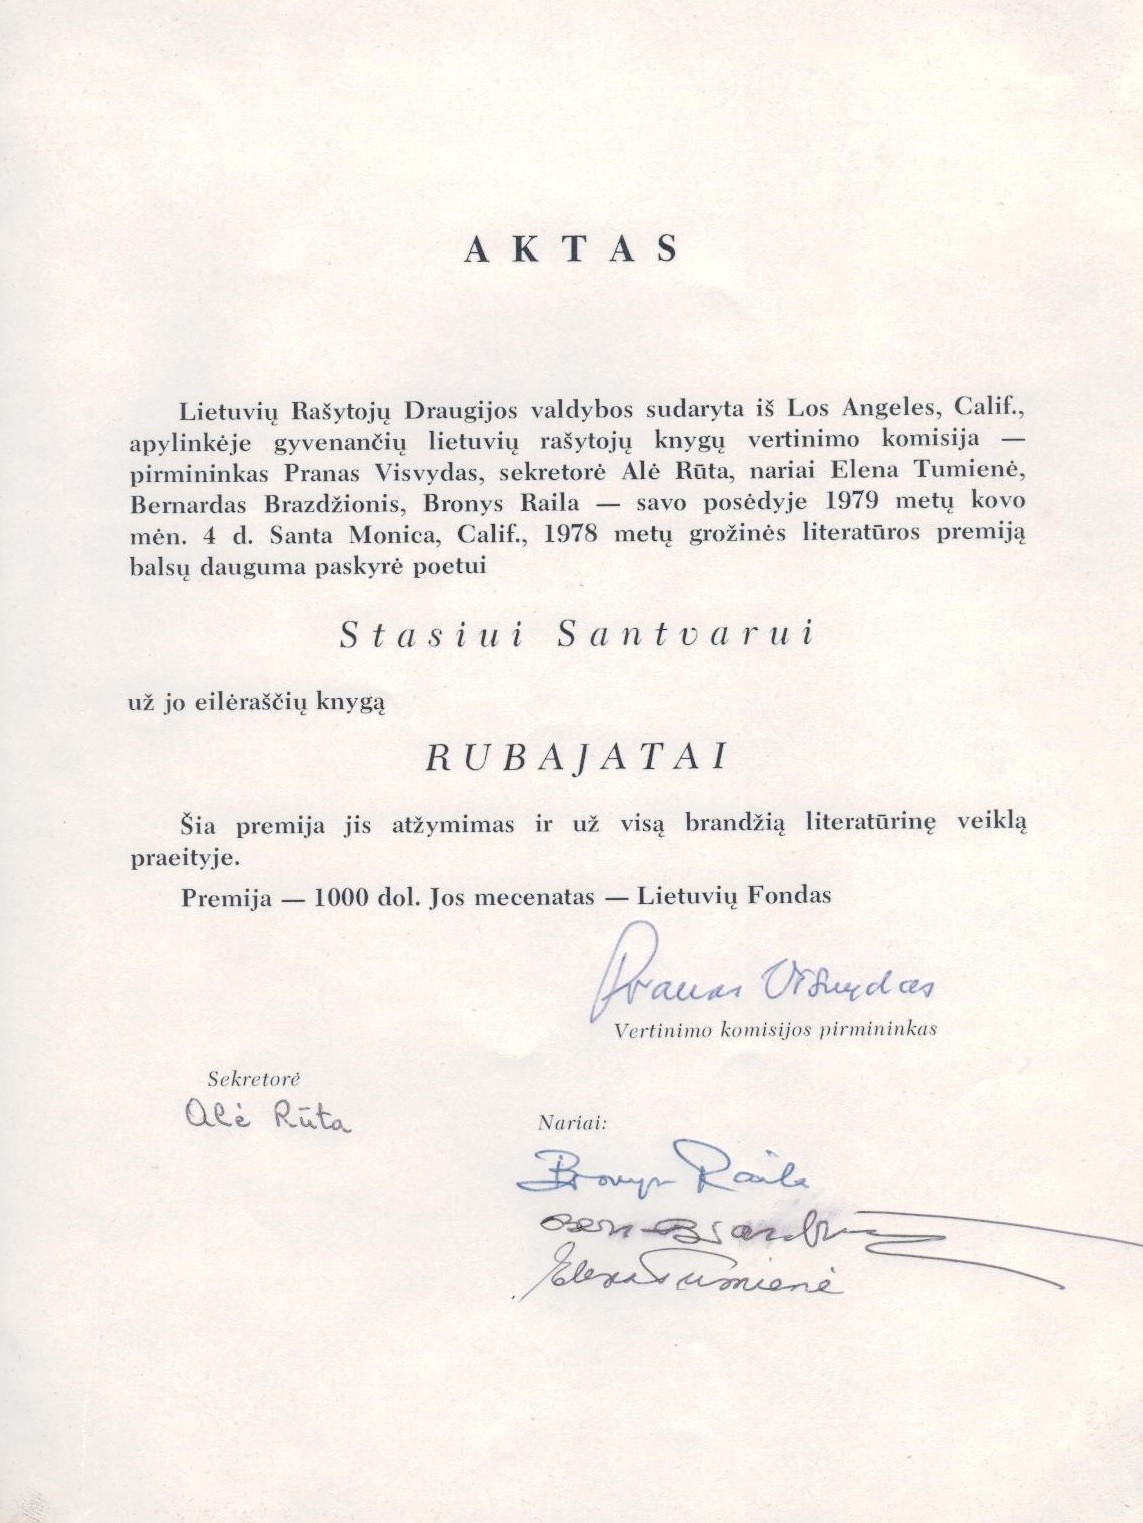 LRD valdybos aktas dėl premijos skyrimo S. Santvarui už eilėraščių knygą „Rubajatai“. Santa Monika. 1979.03.04. MLLM 86096